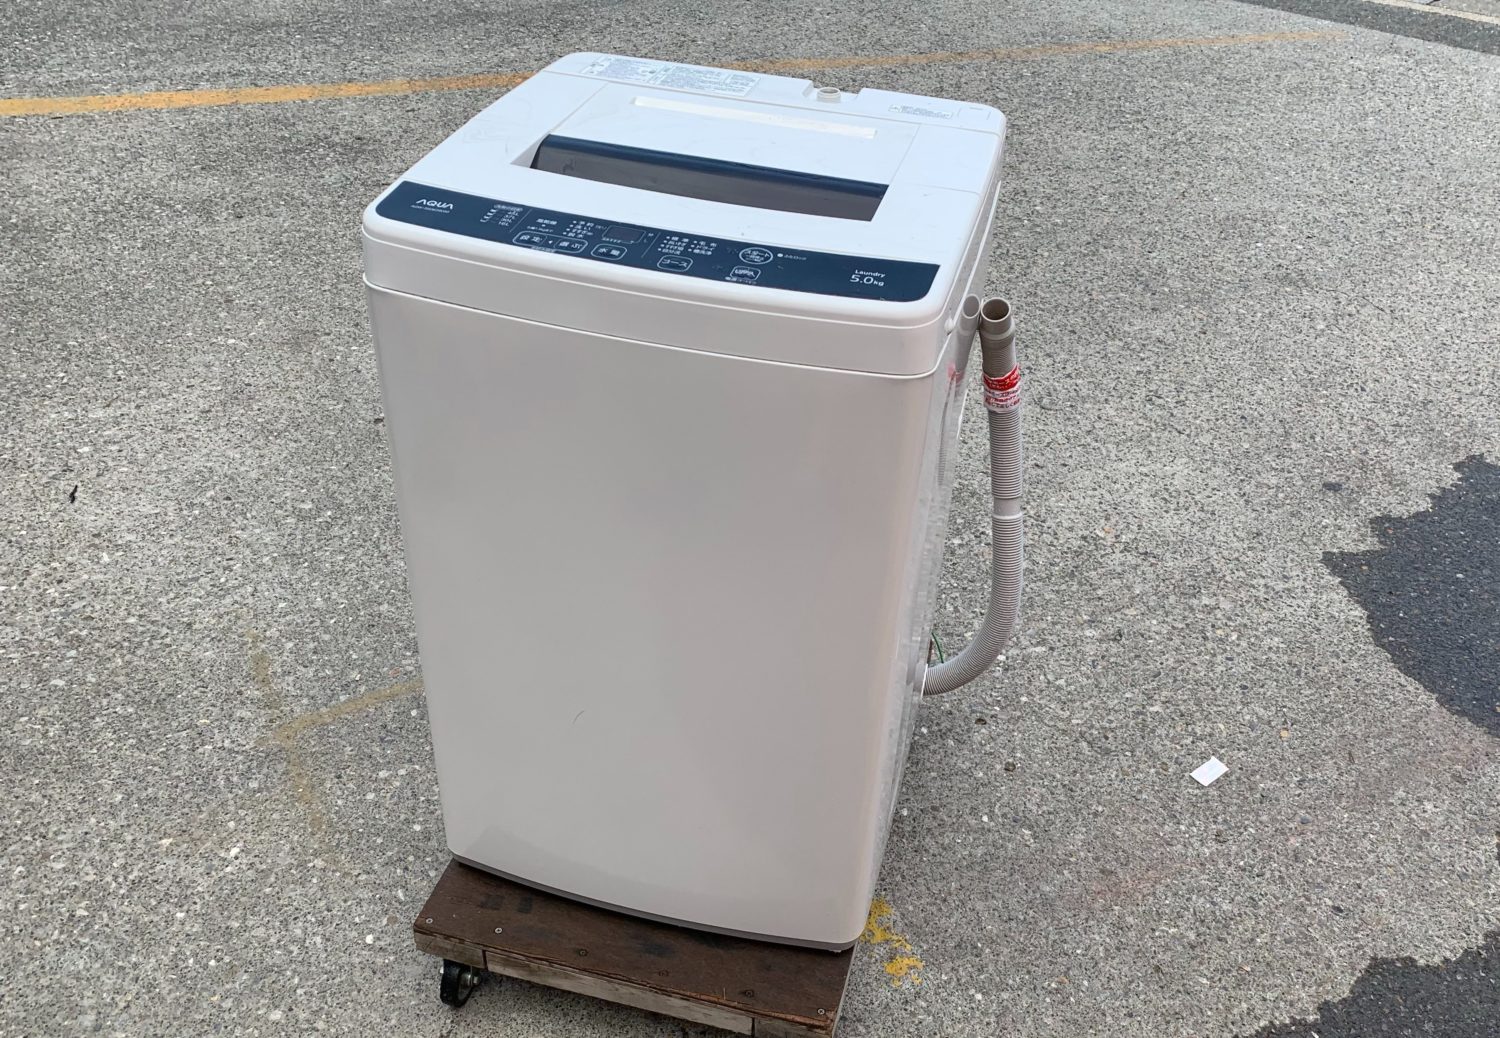 【臭いが気になったら分解掃除】AQUA 5.0kg 洗濯機 AQW-S50E2 分解と掃除の方法